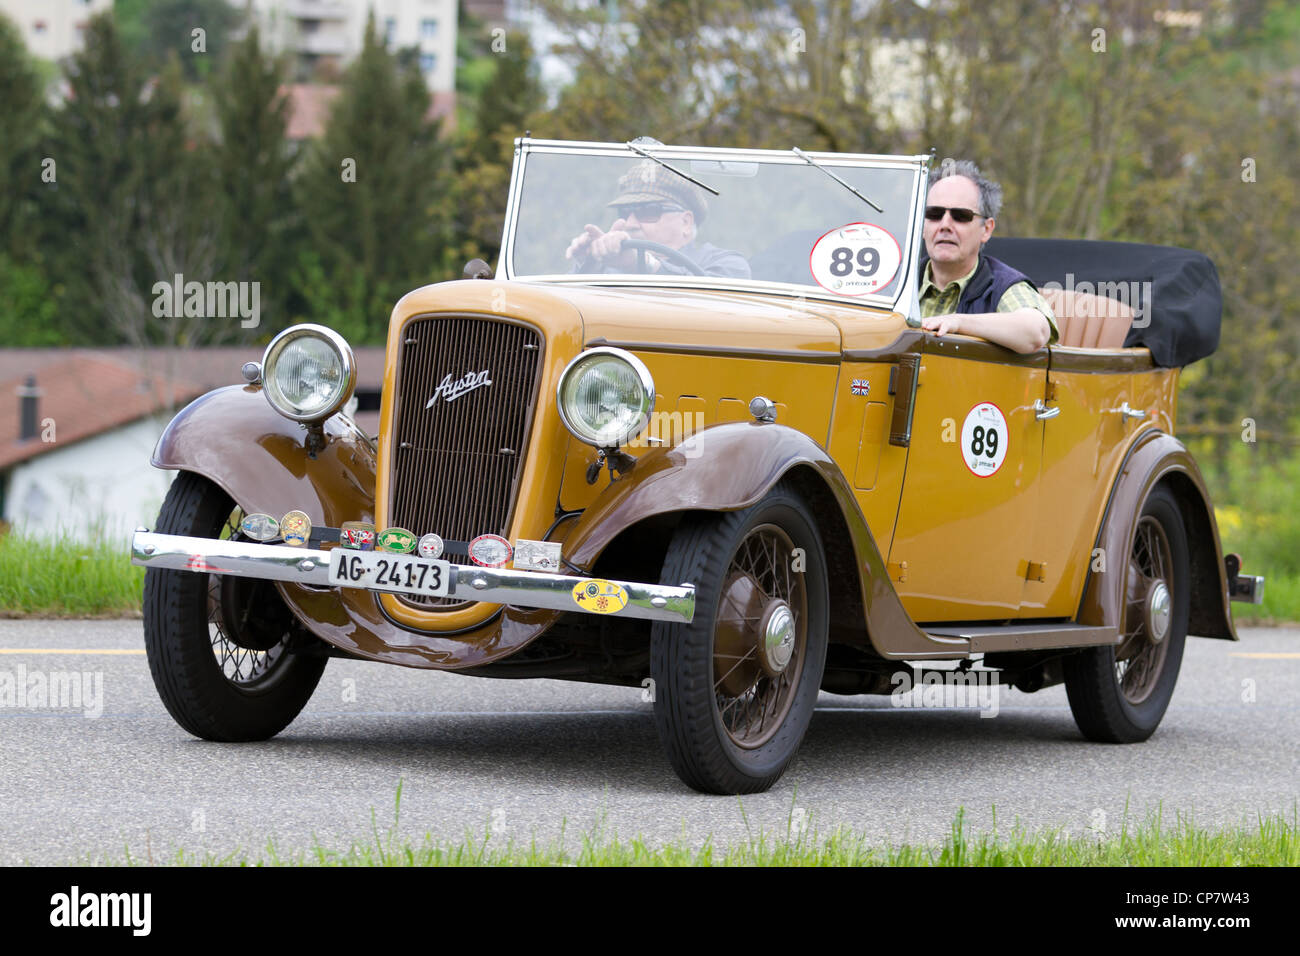 Vintage Pre Krieg Rennwagen Austin Tourer aus dem Jahr 1936 beim Grand Prix in Mutschellen, SUI am 29. April 2012. Stockfoto